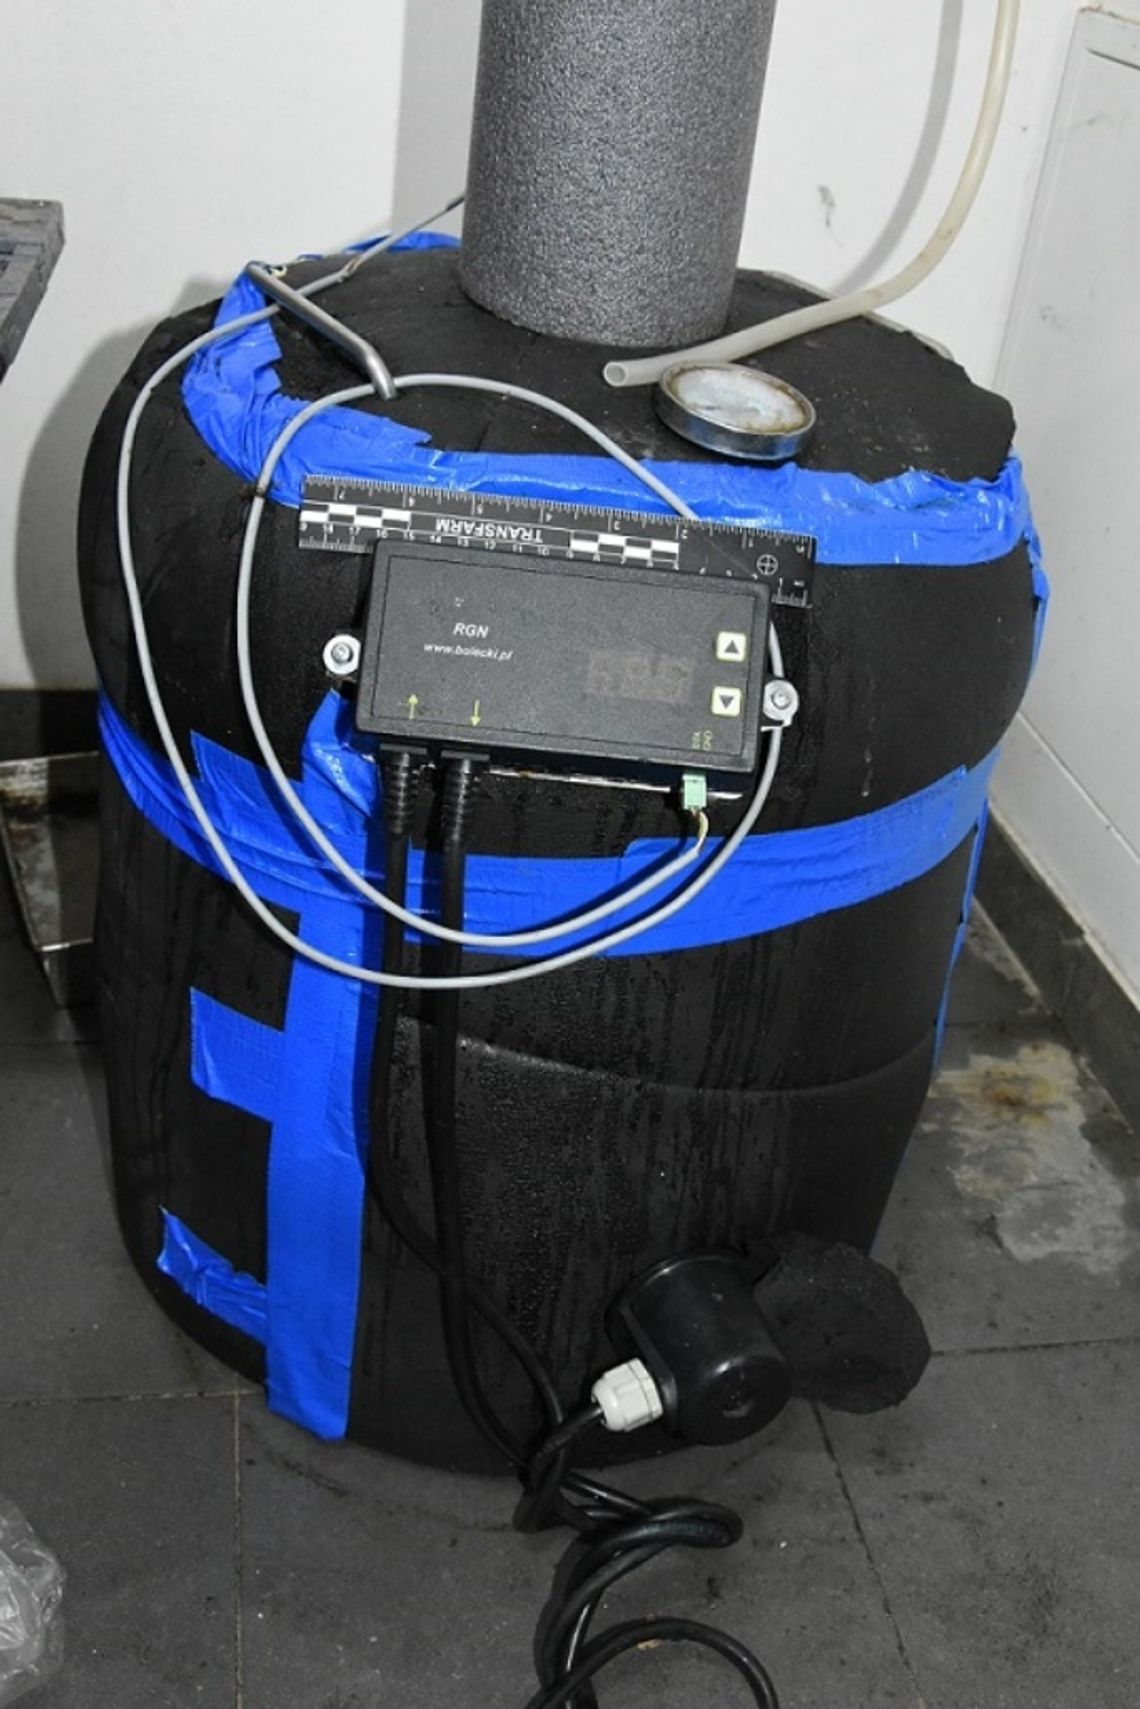 Biała Podlaska: Ujawnili aparaturę do destylacji i 120 litrów alkoholu